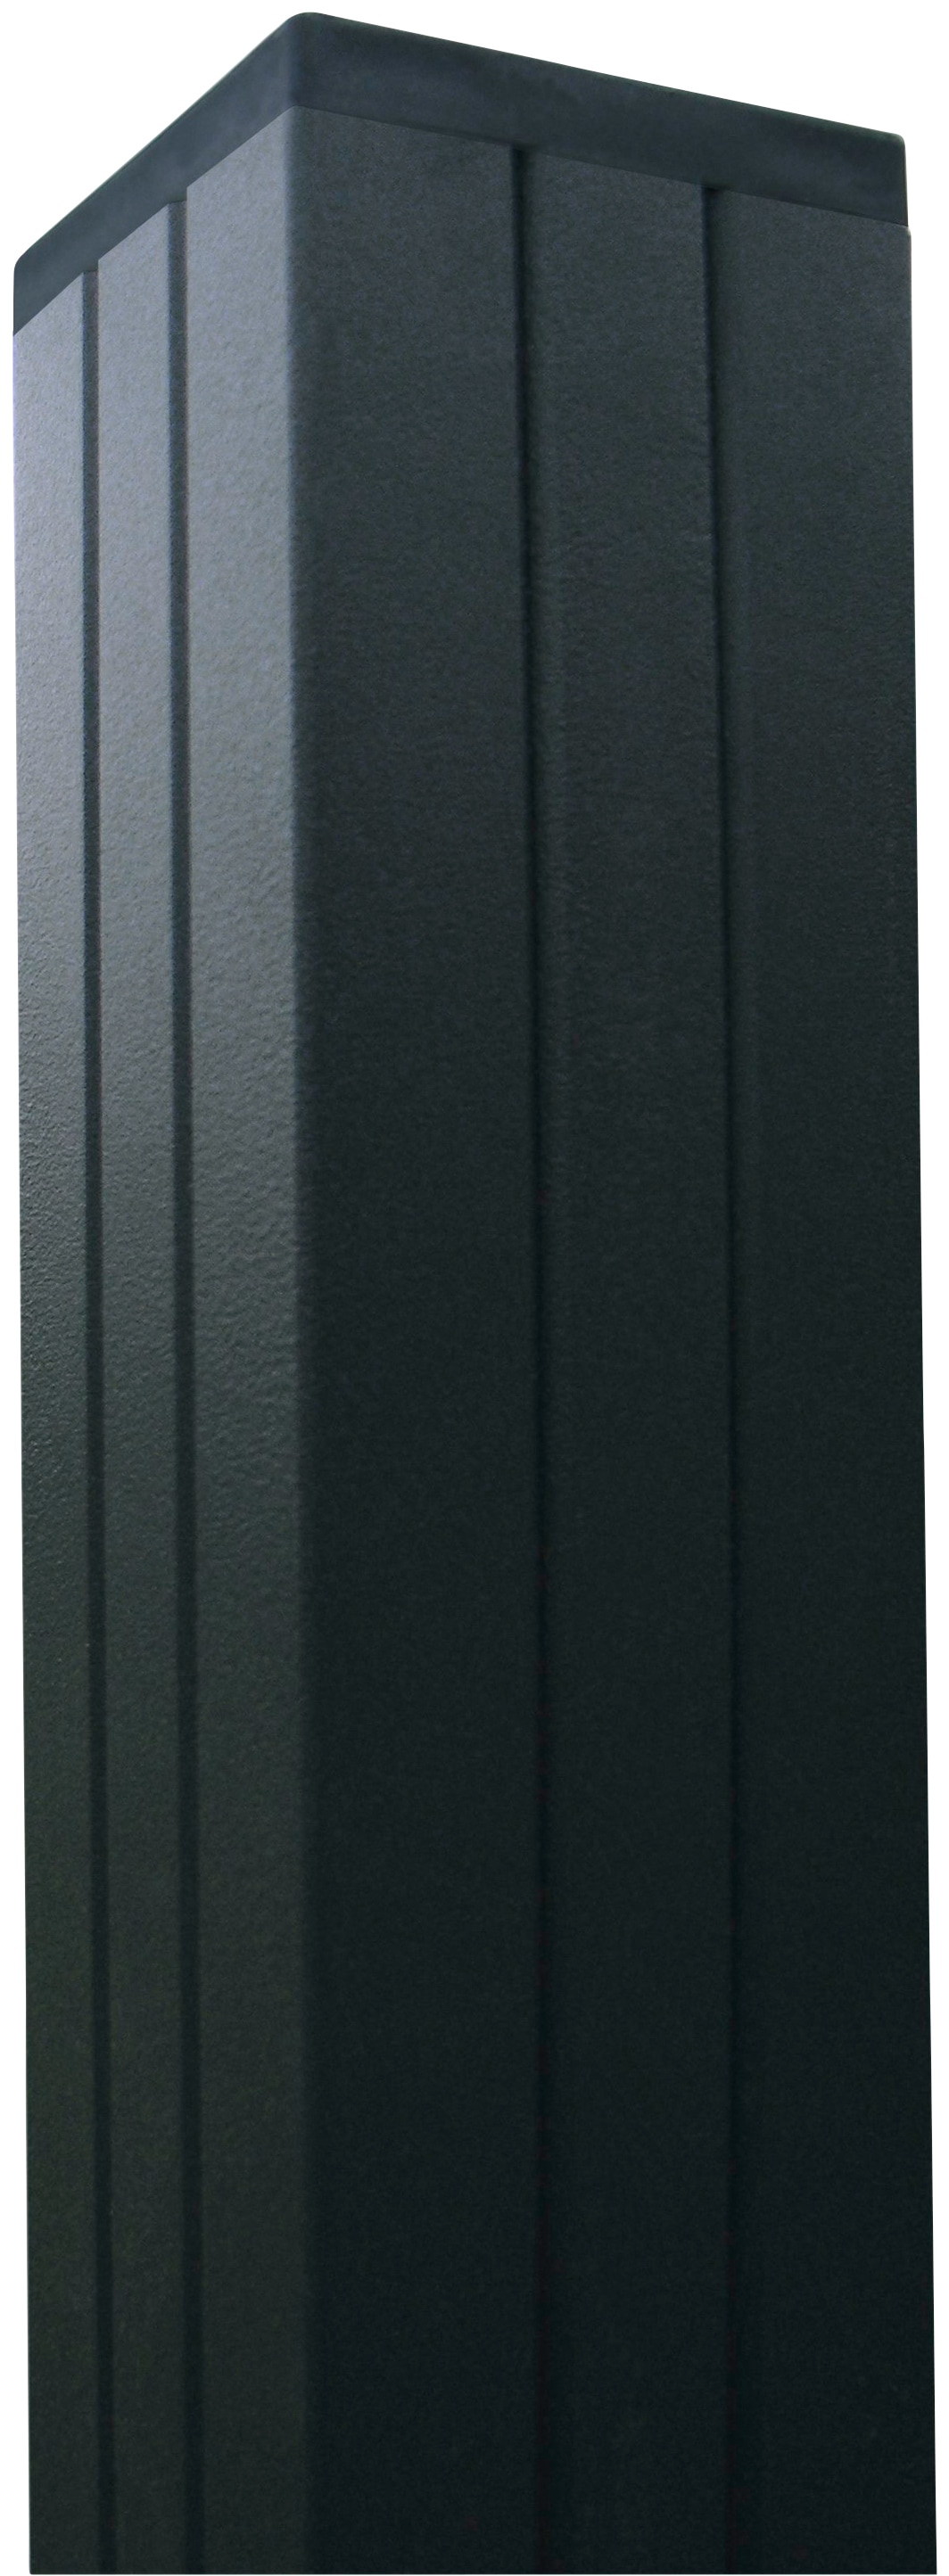 Kiehn-Holz Sichtschutzelement, LxH: 556x180 cm, Pfosten zum Einbetonieren